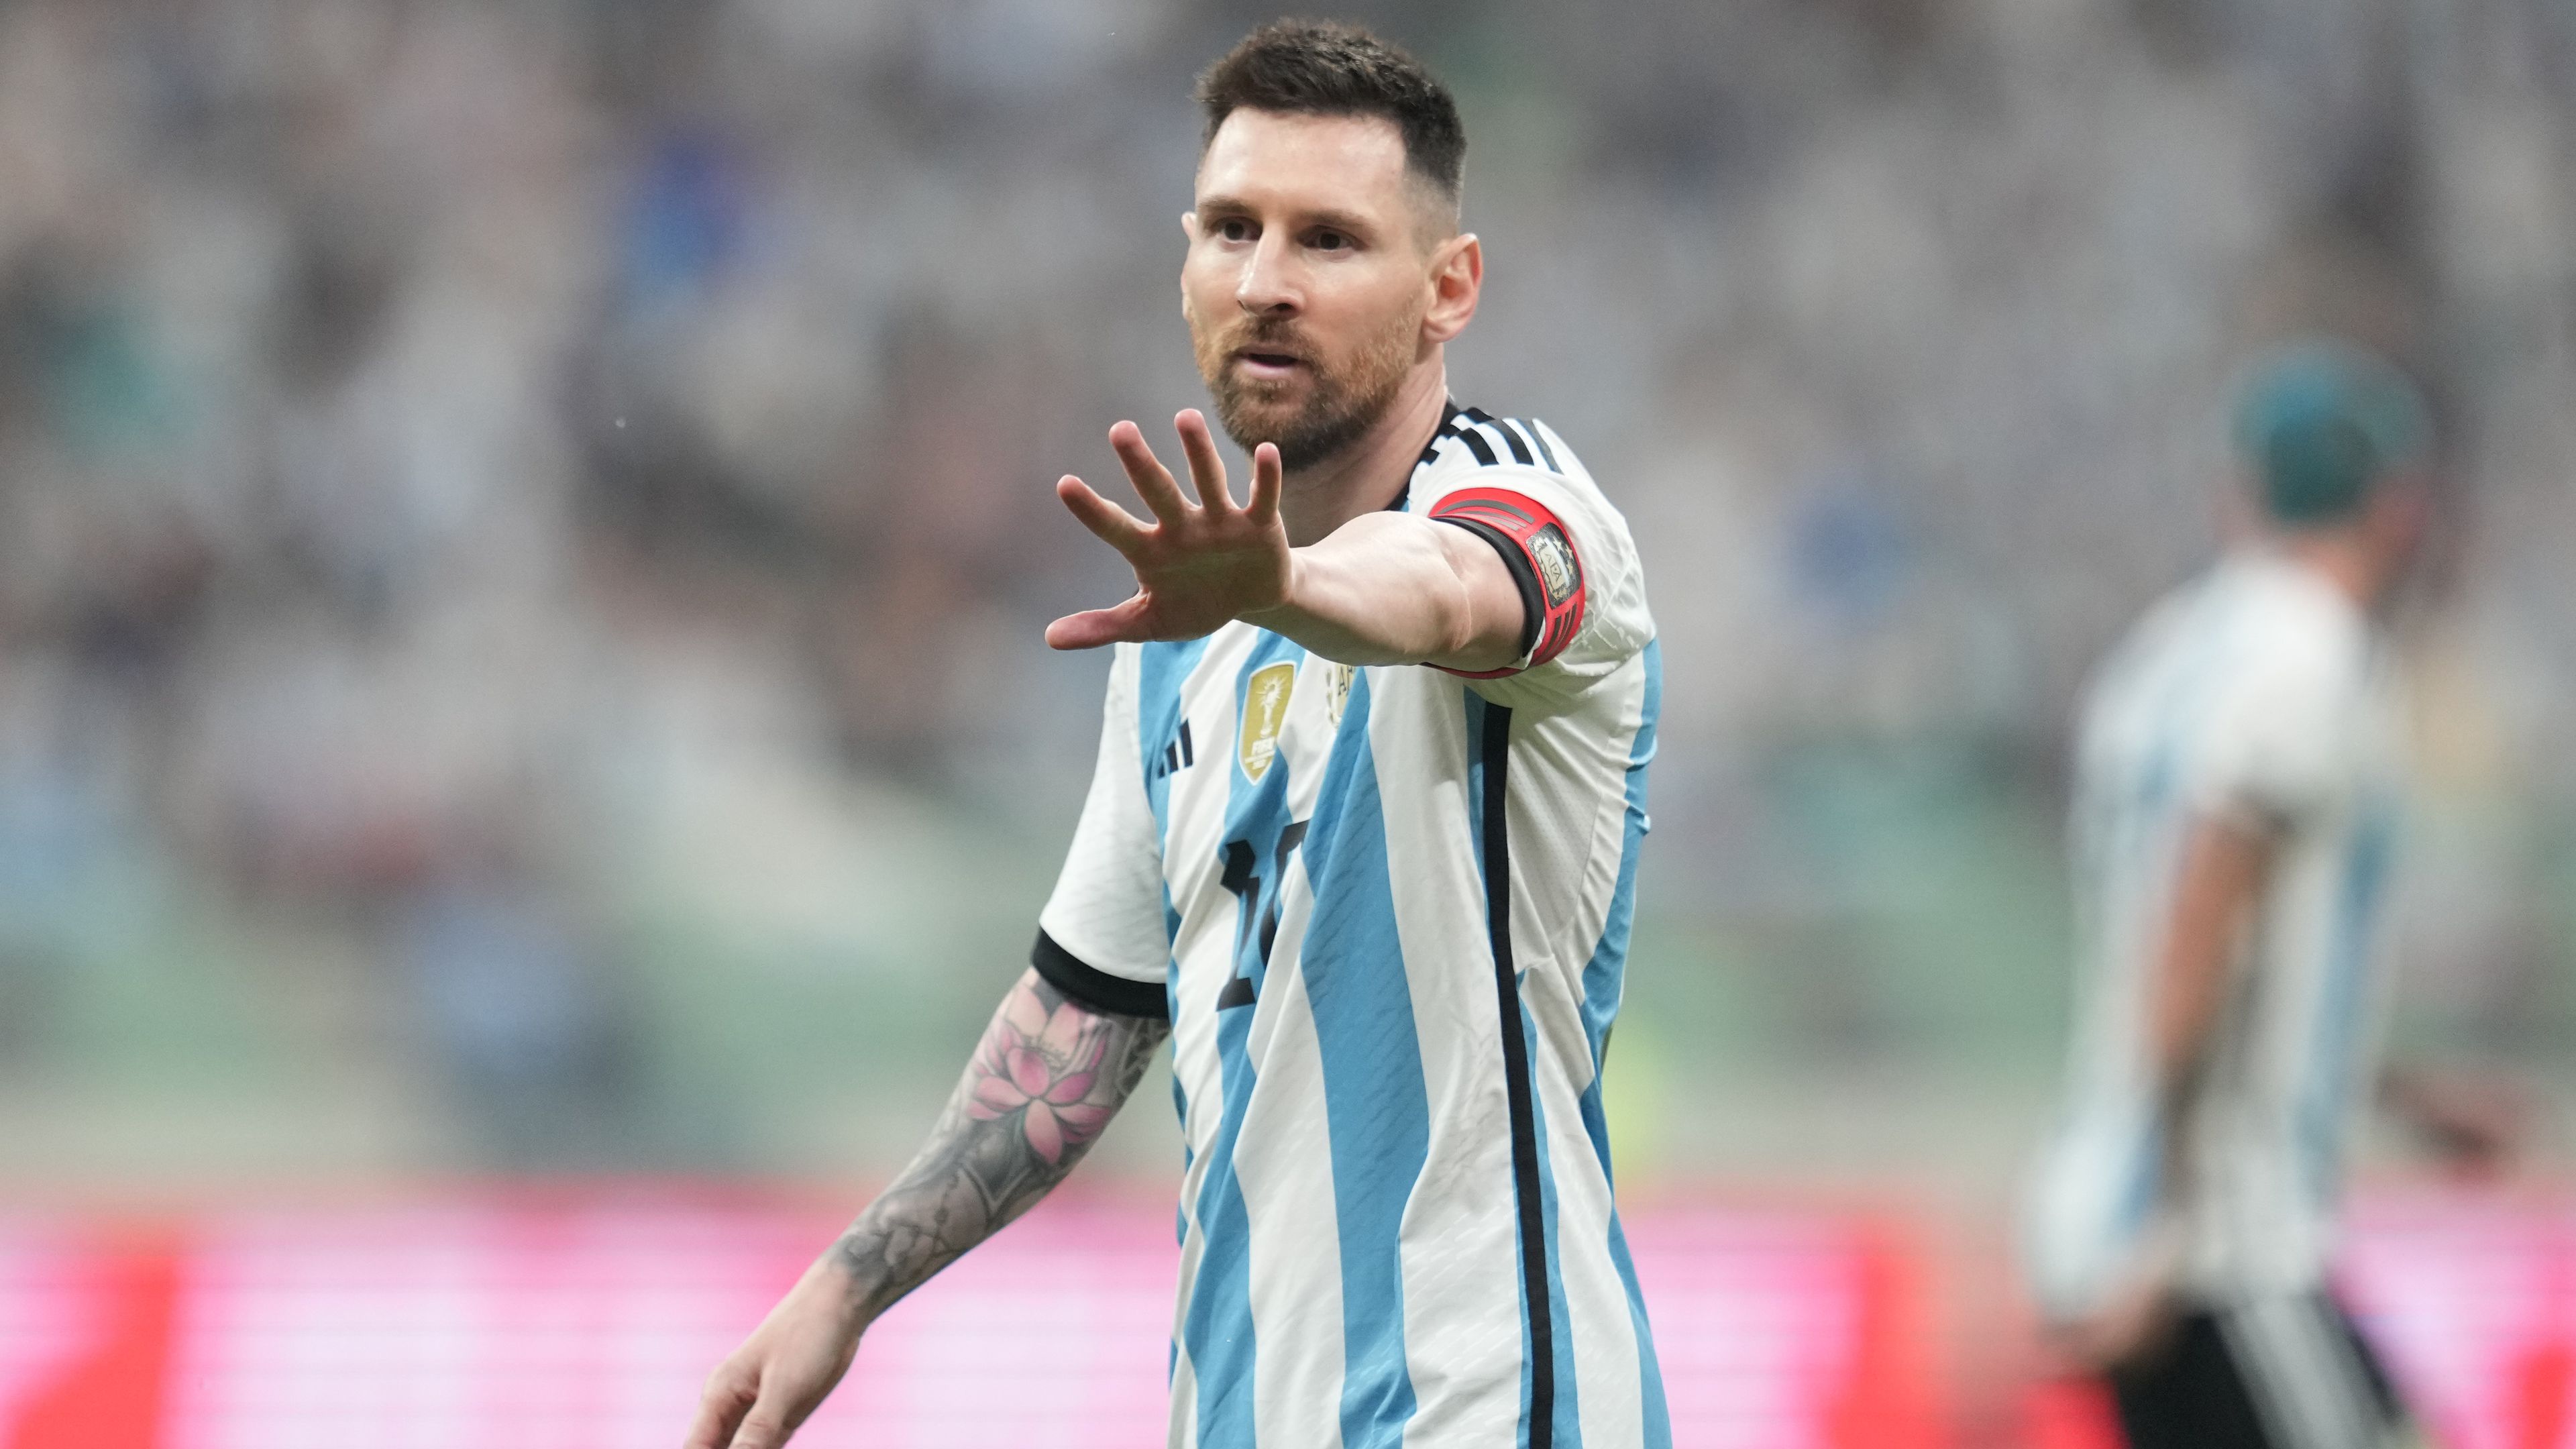 Még korántsem zárultak le a tárgyalások Lionel Messi és az MLS között